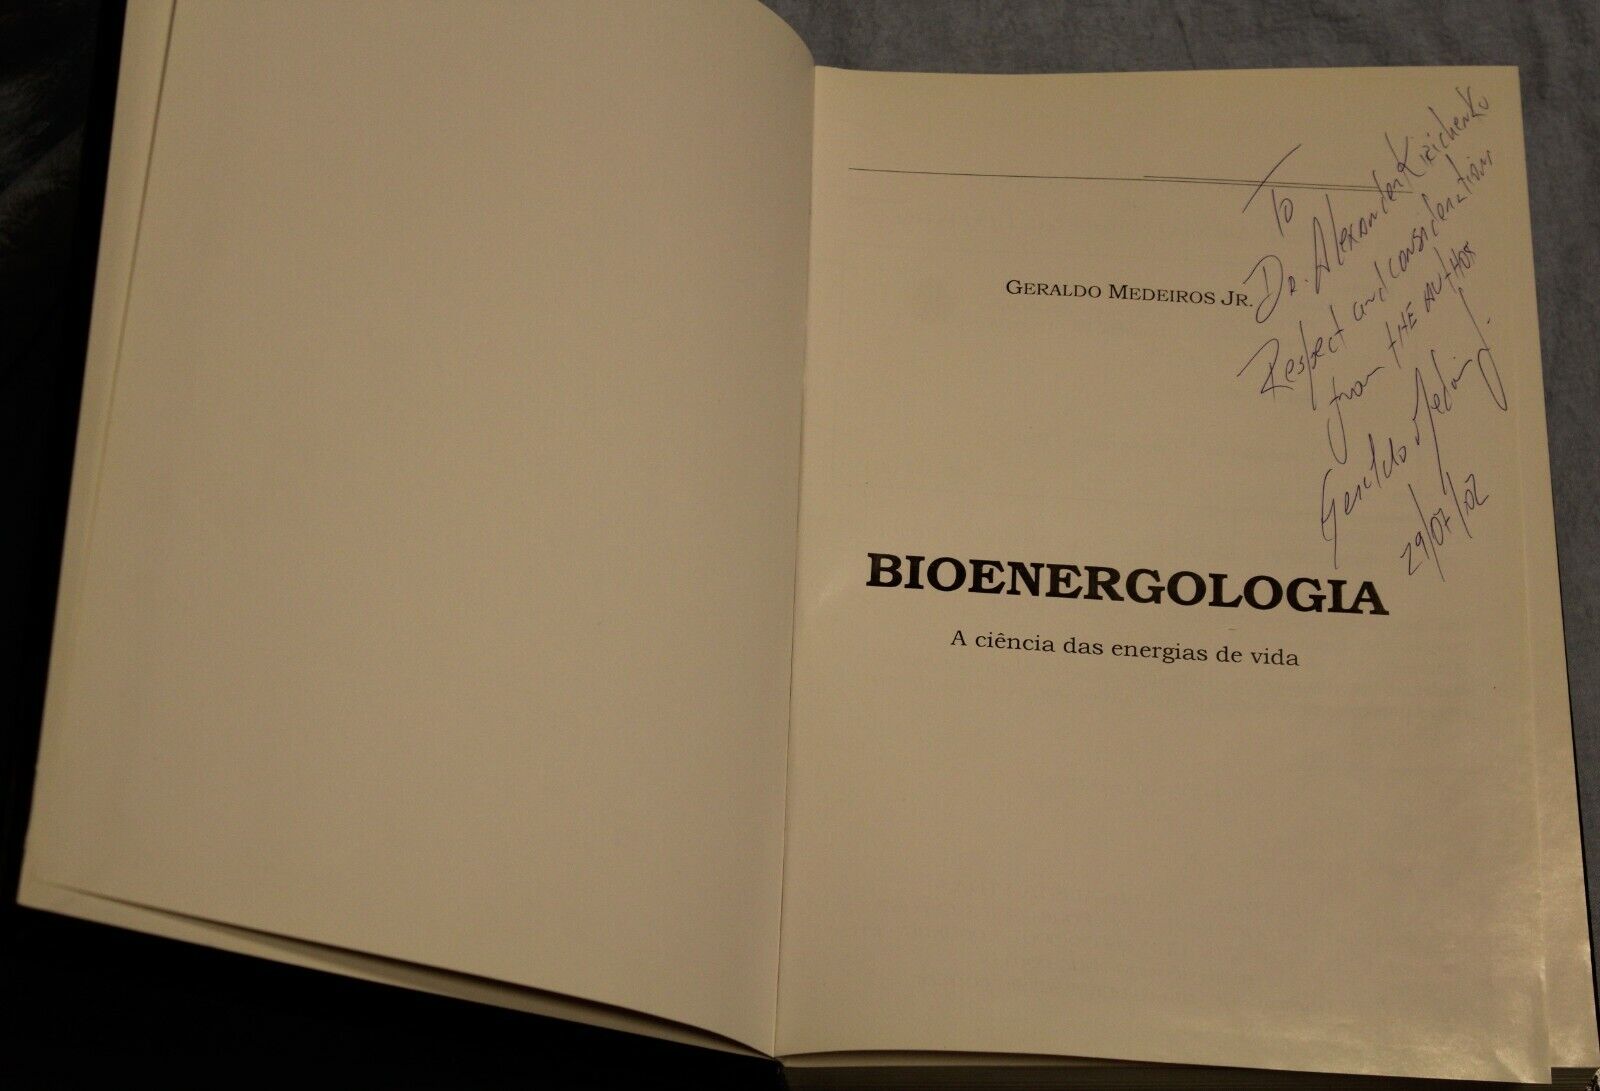 11370.Medical book: Bioenergologia Signed by author Geraldo Medeiros, Jr 2000